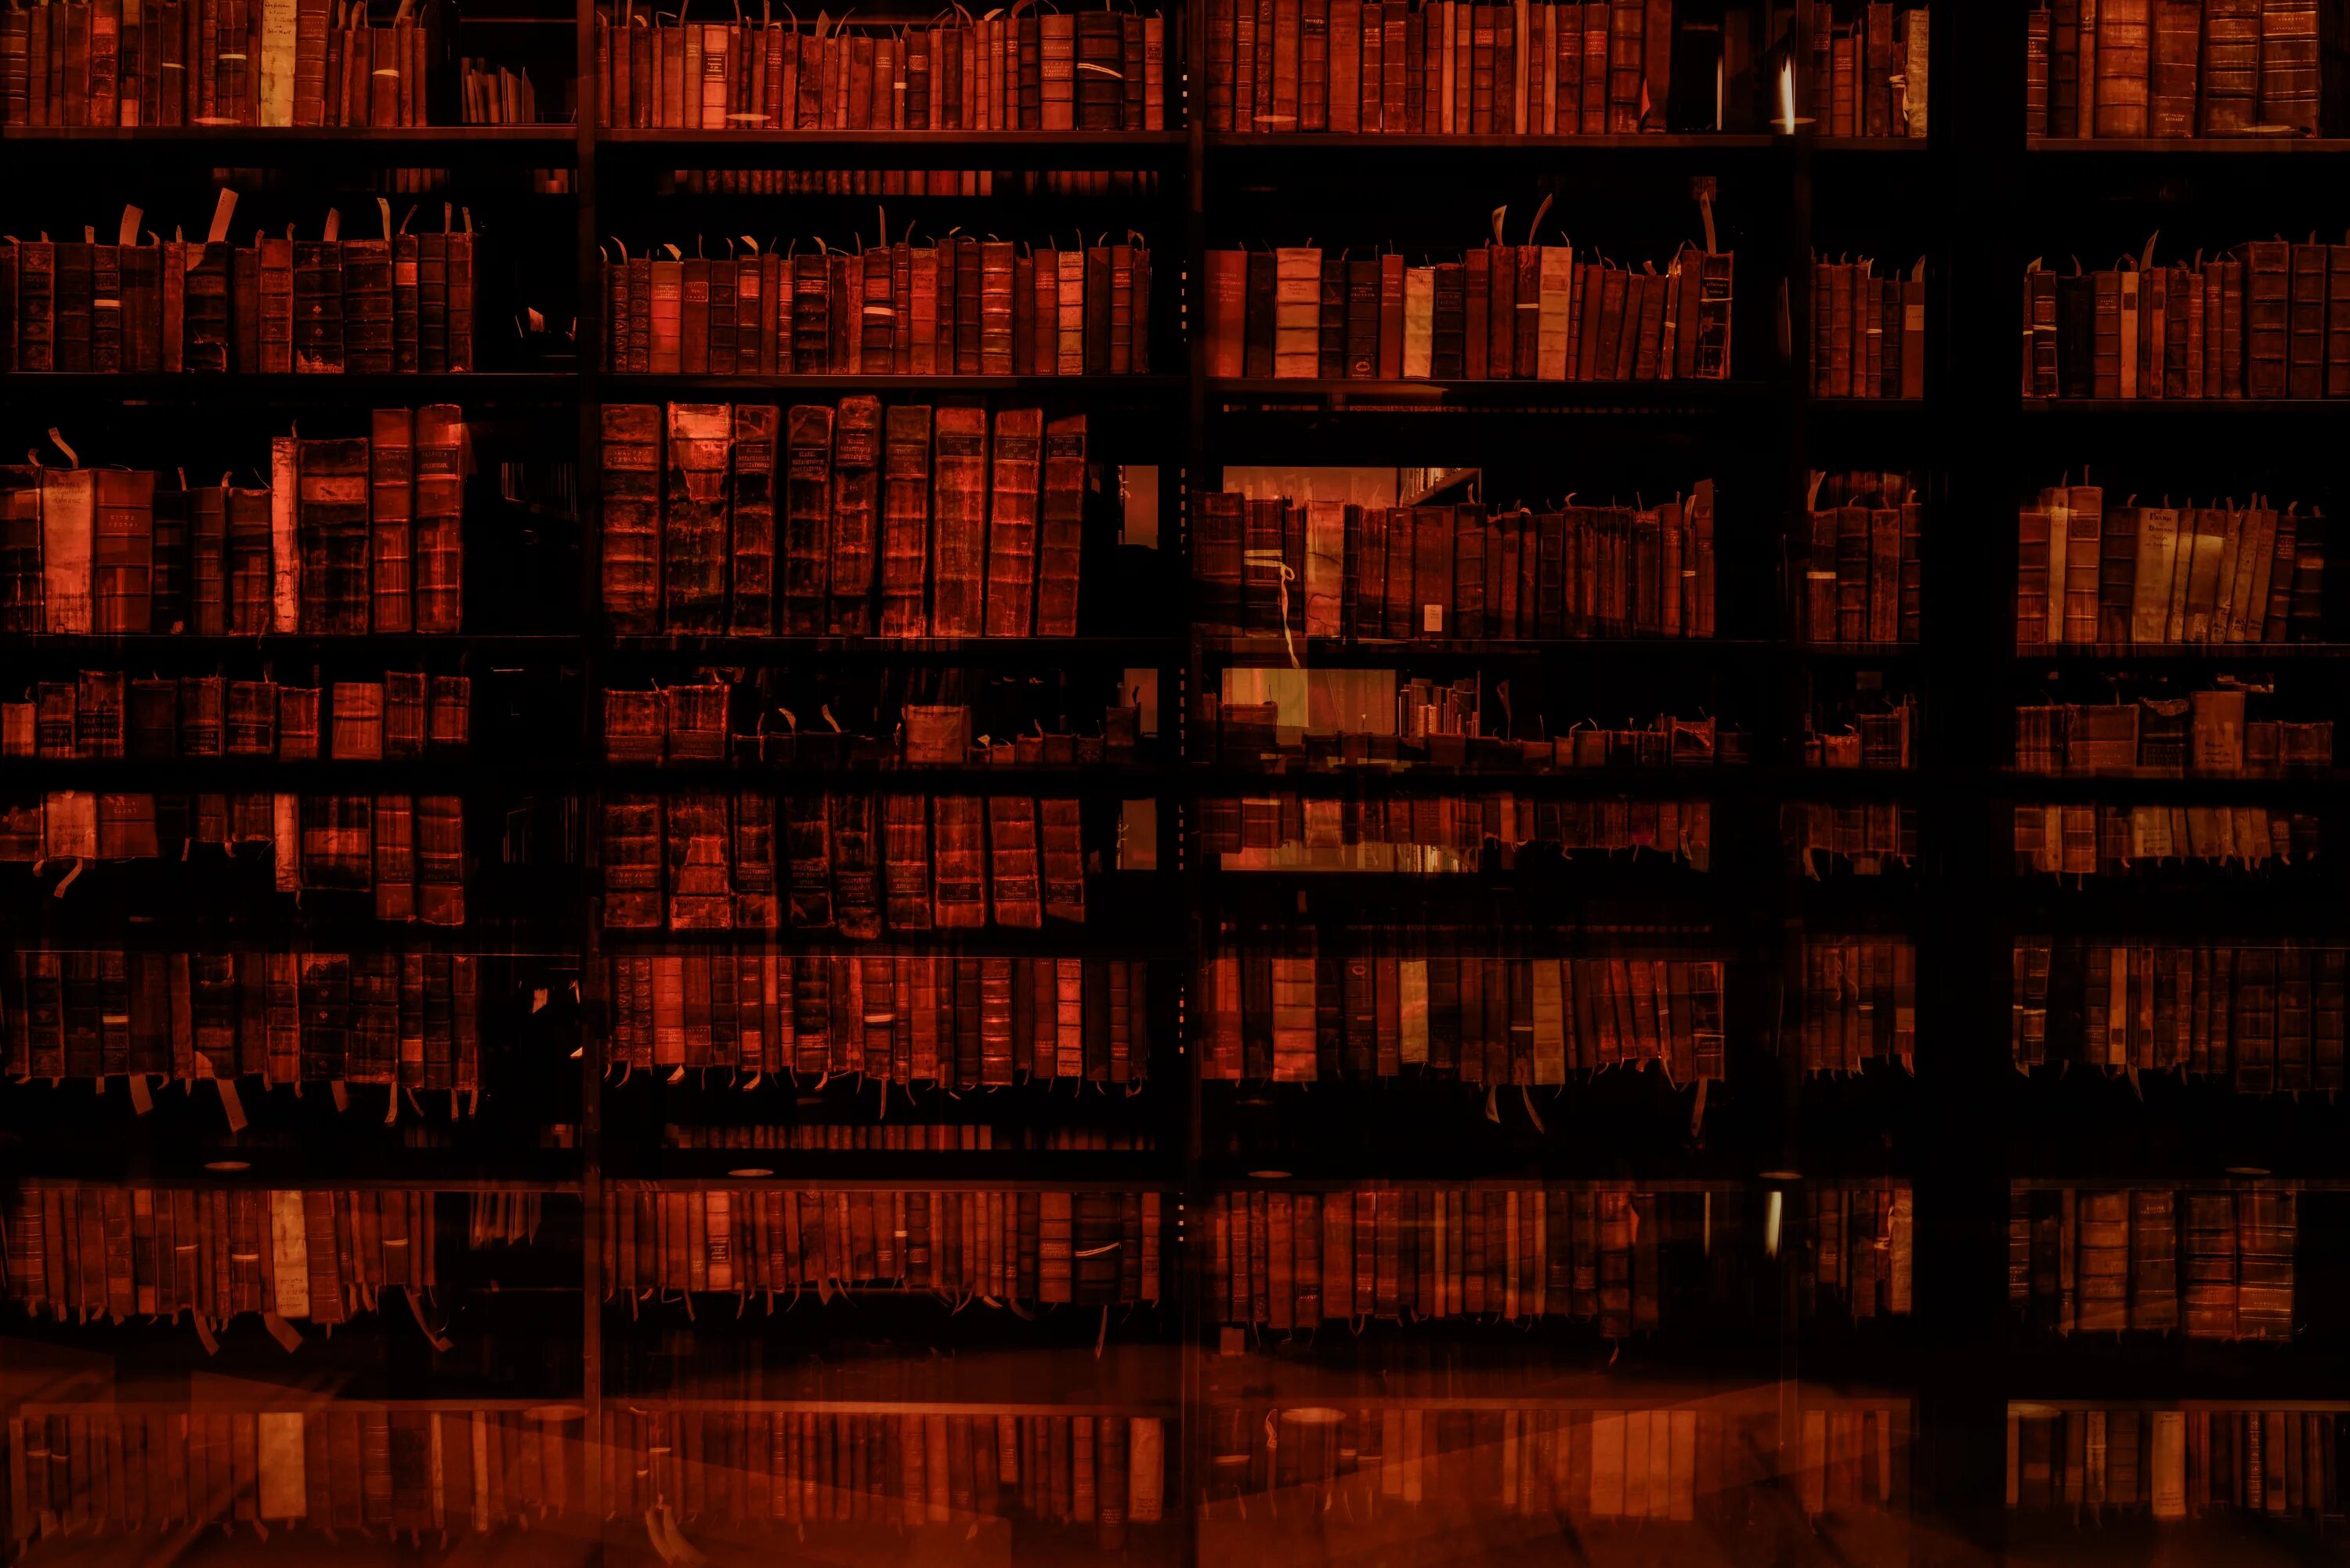 Библиотека 3 0. Beinecke rare book & Manuscript Library. Библиотека редких книг и рукописей Бейнеке. Библиотека текстура. Ящики в библиотеке текстура.